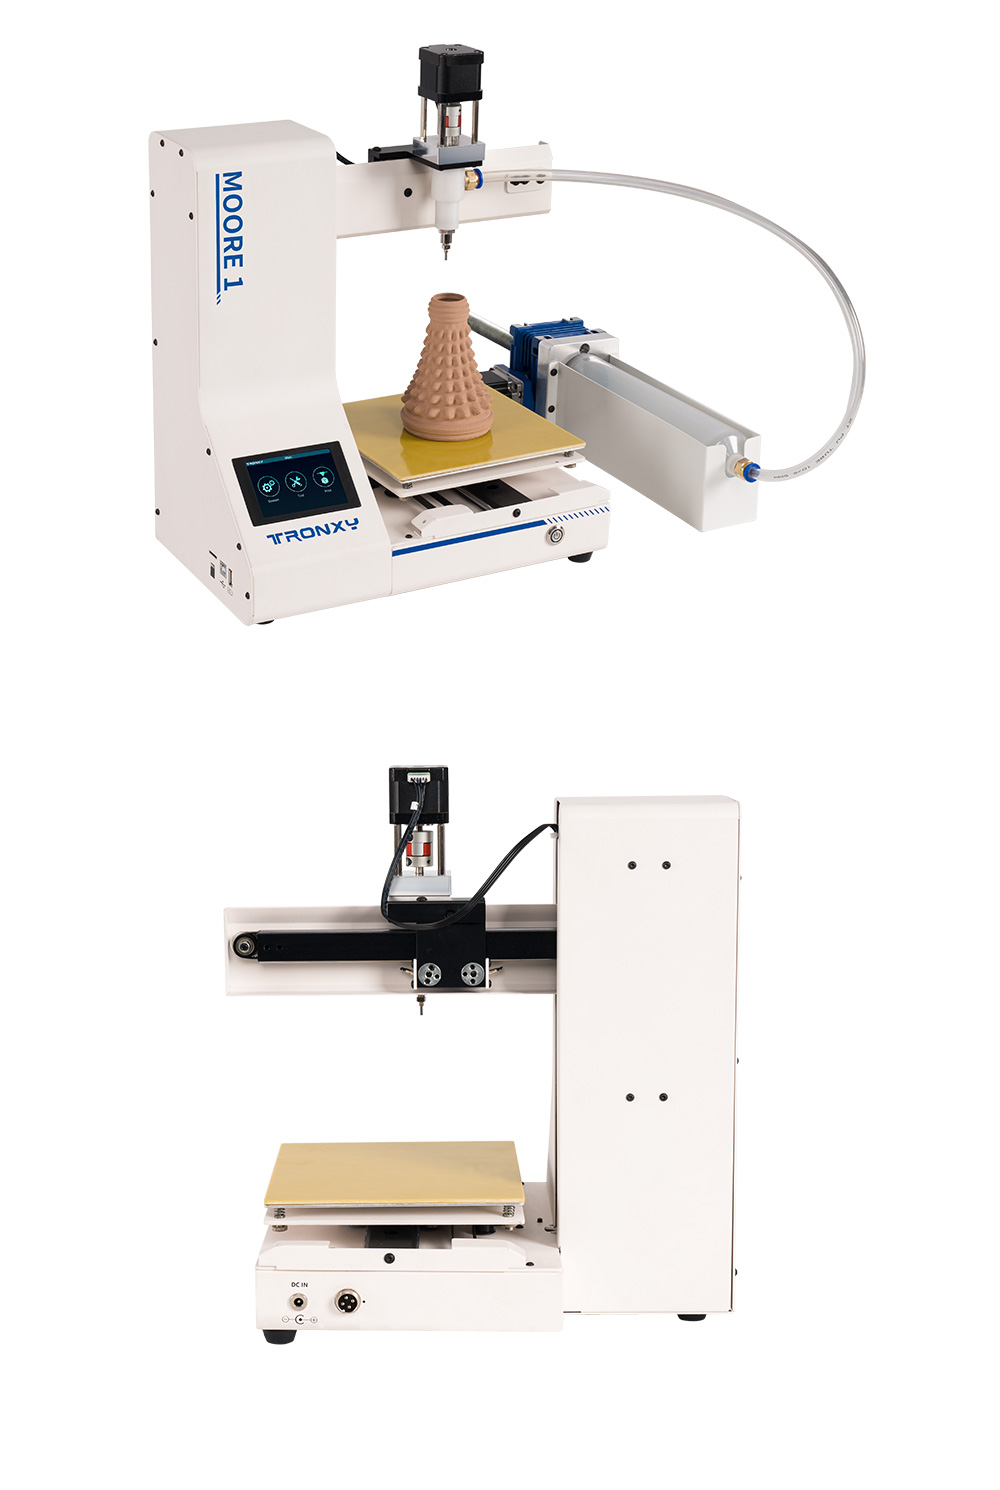 Tronxy Moore 1 Mini Clay 3D nyomtató, 40mm/s nyomtatási sebesség, nyomtatás folytatása, TMC2209, 180*180*180mm